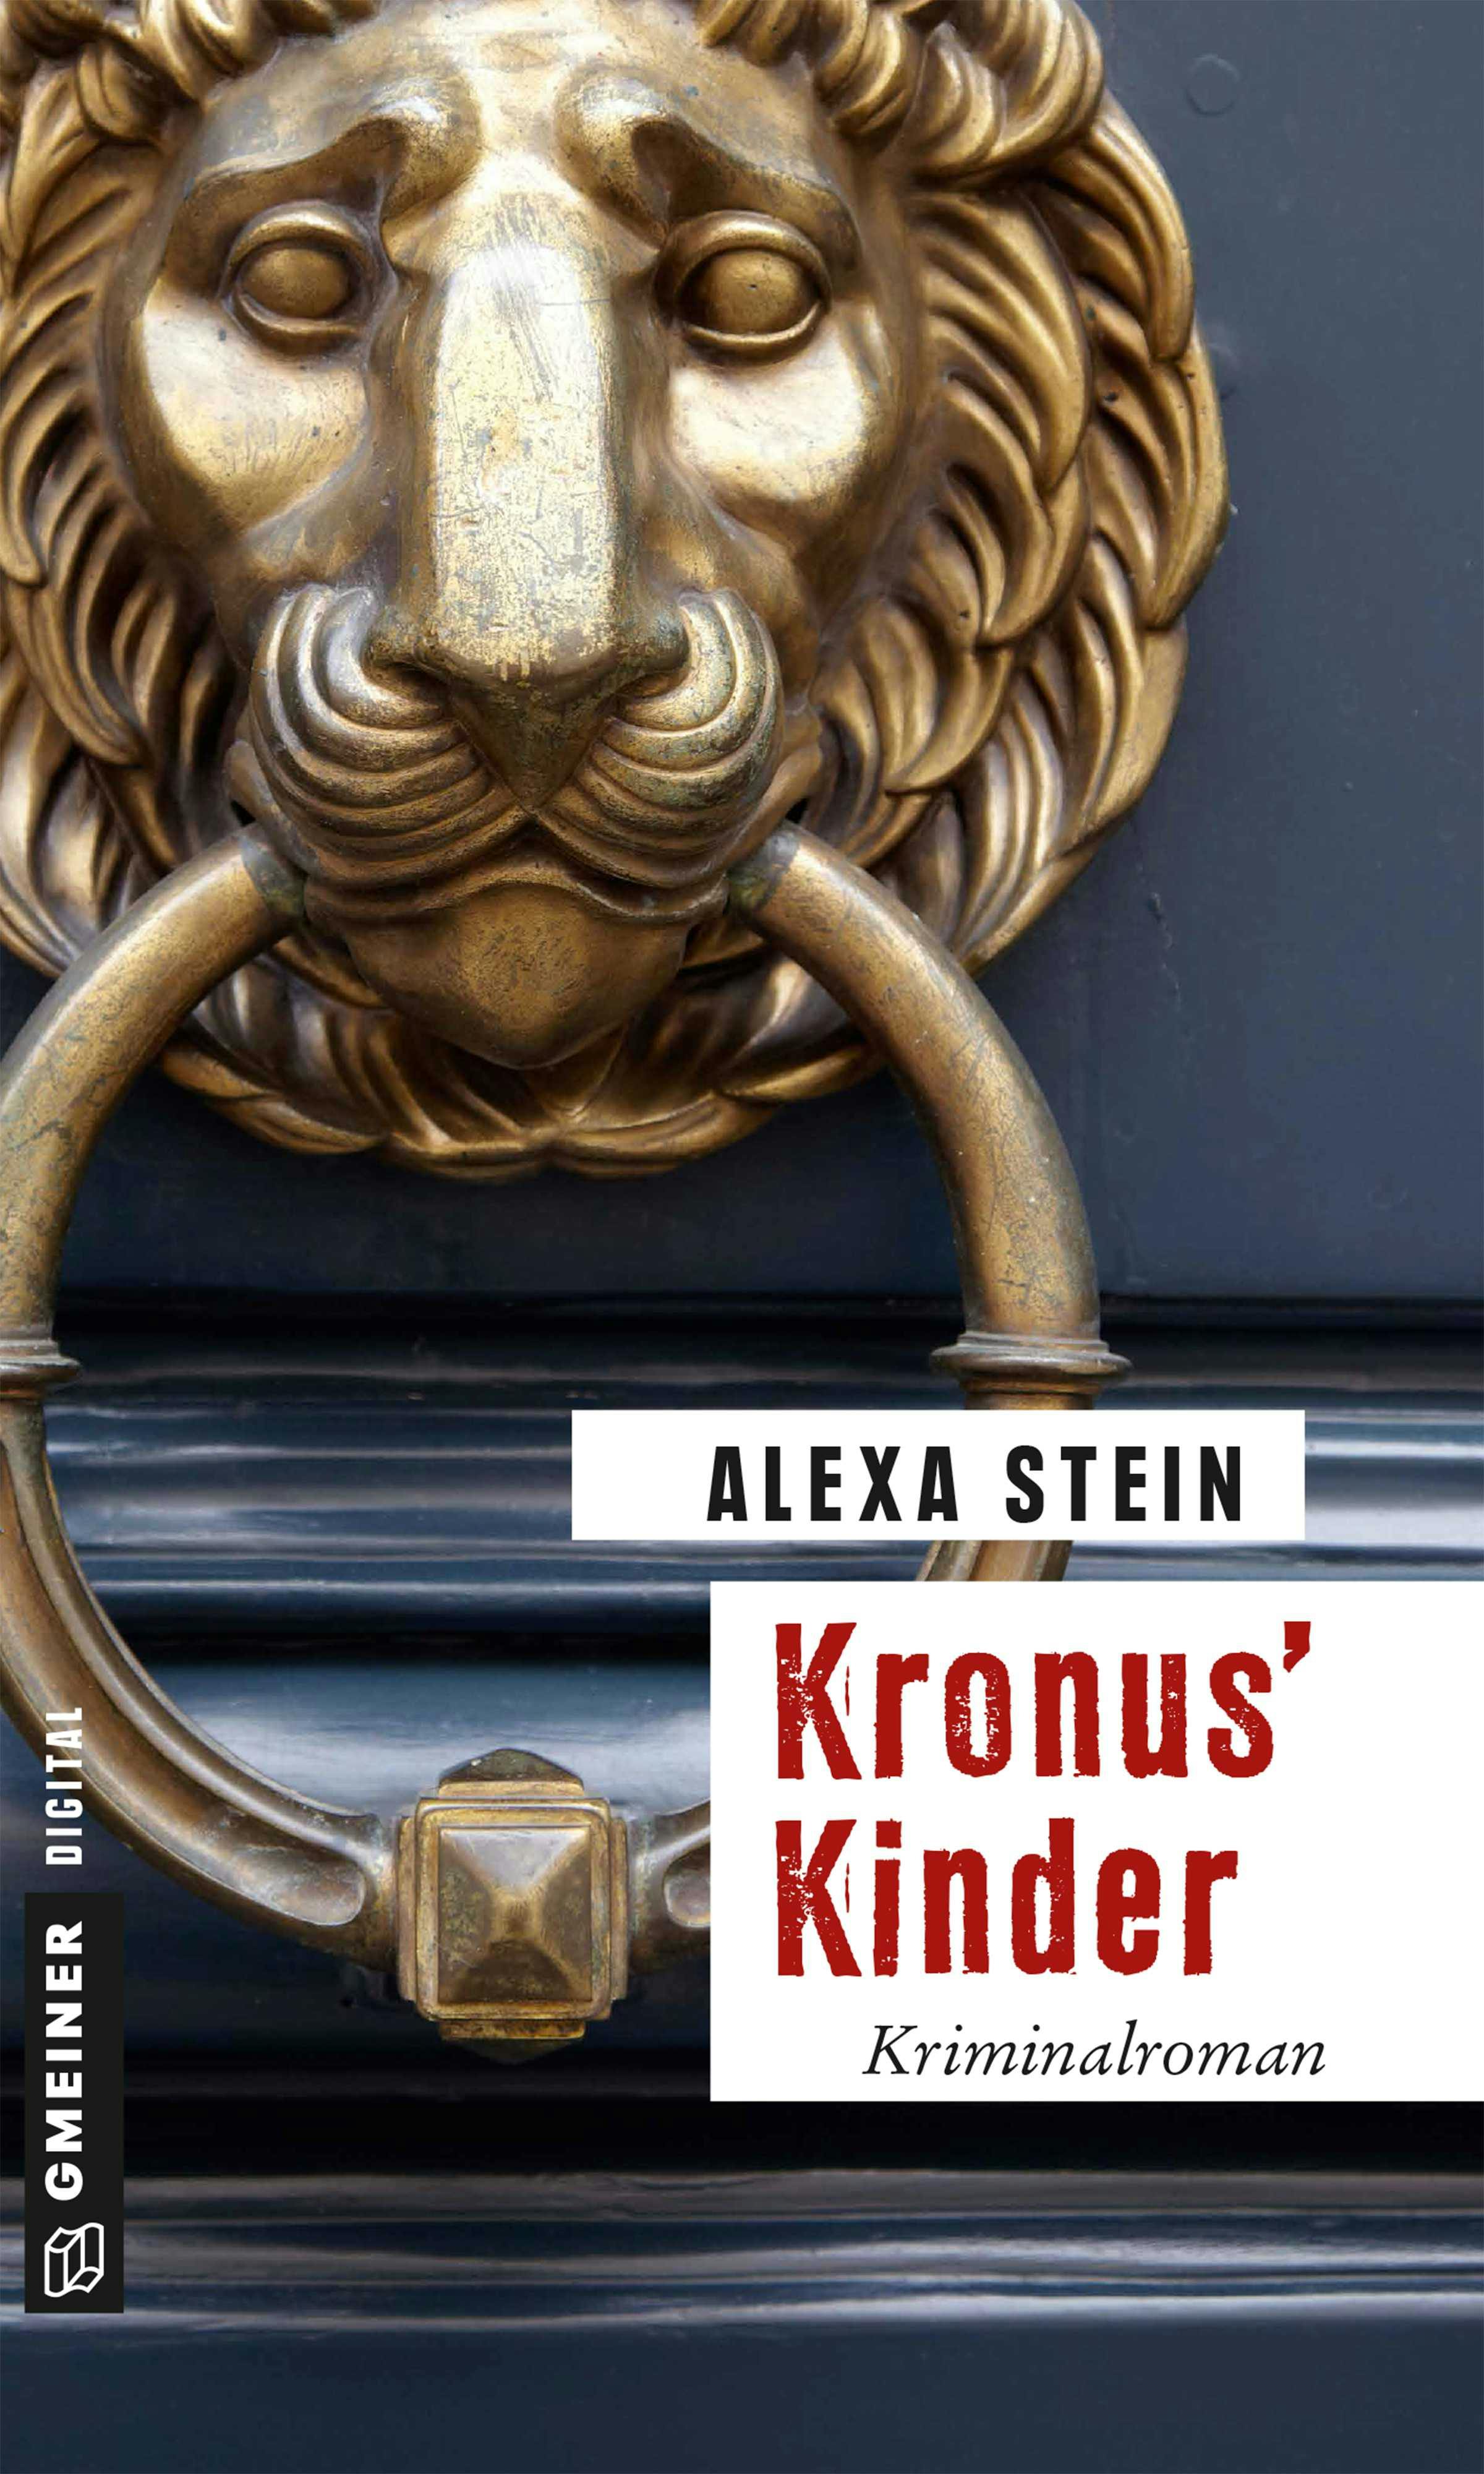 Kronus’ Kinder - Alexa Stein